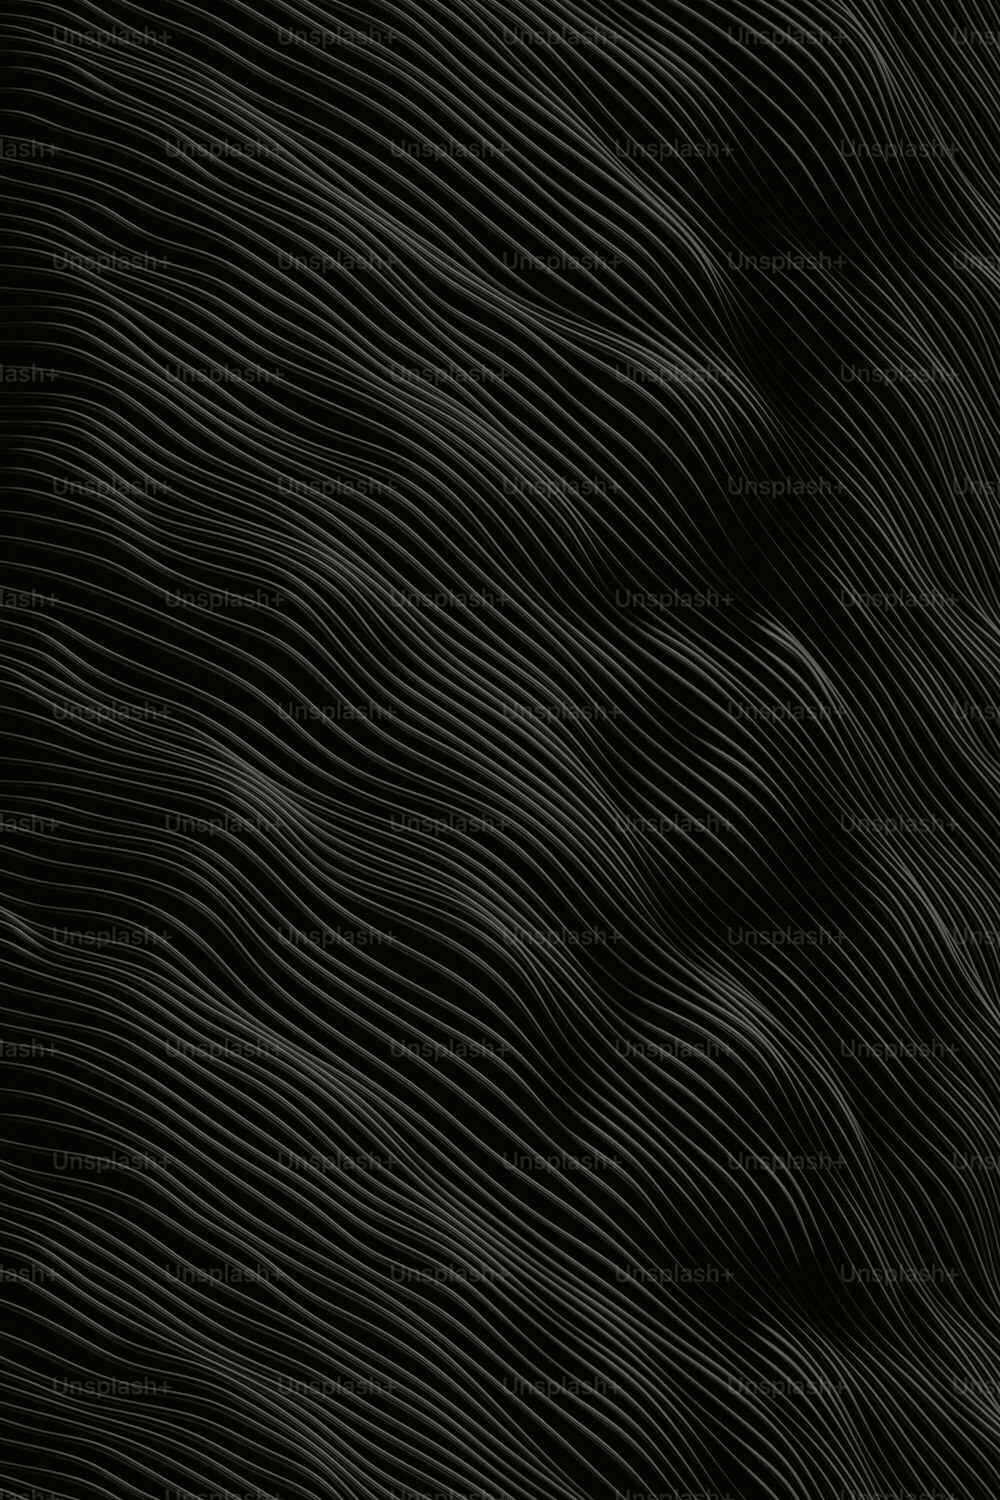 Un fond noir et blanc avec des lignes ondulées